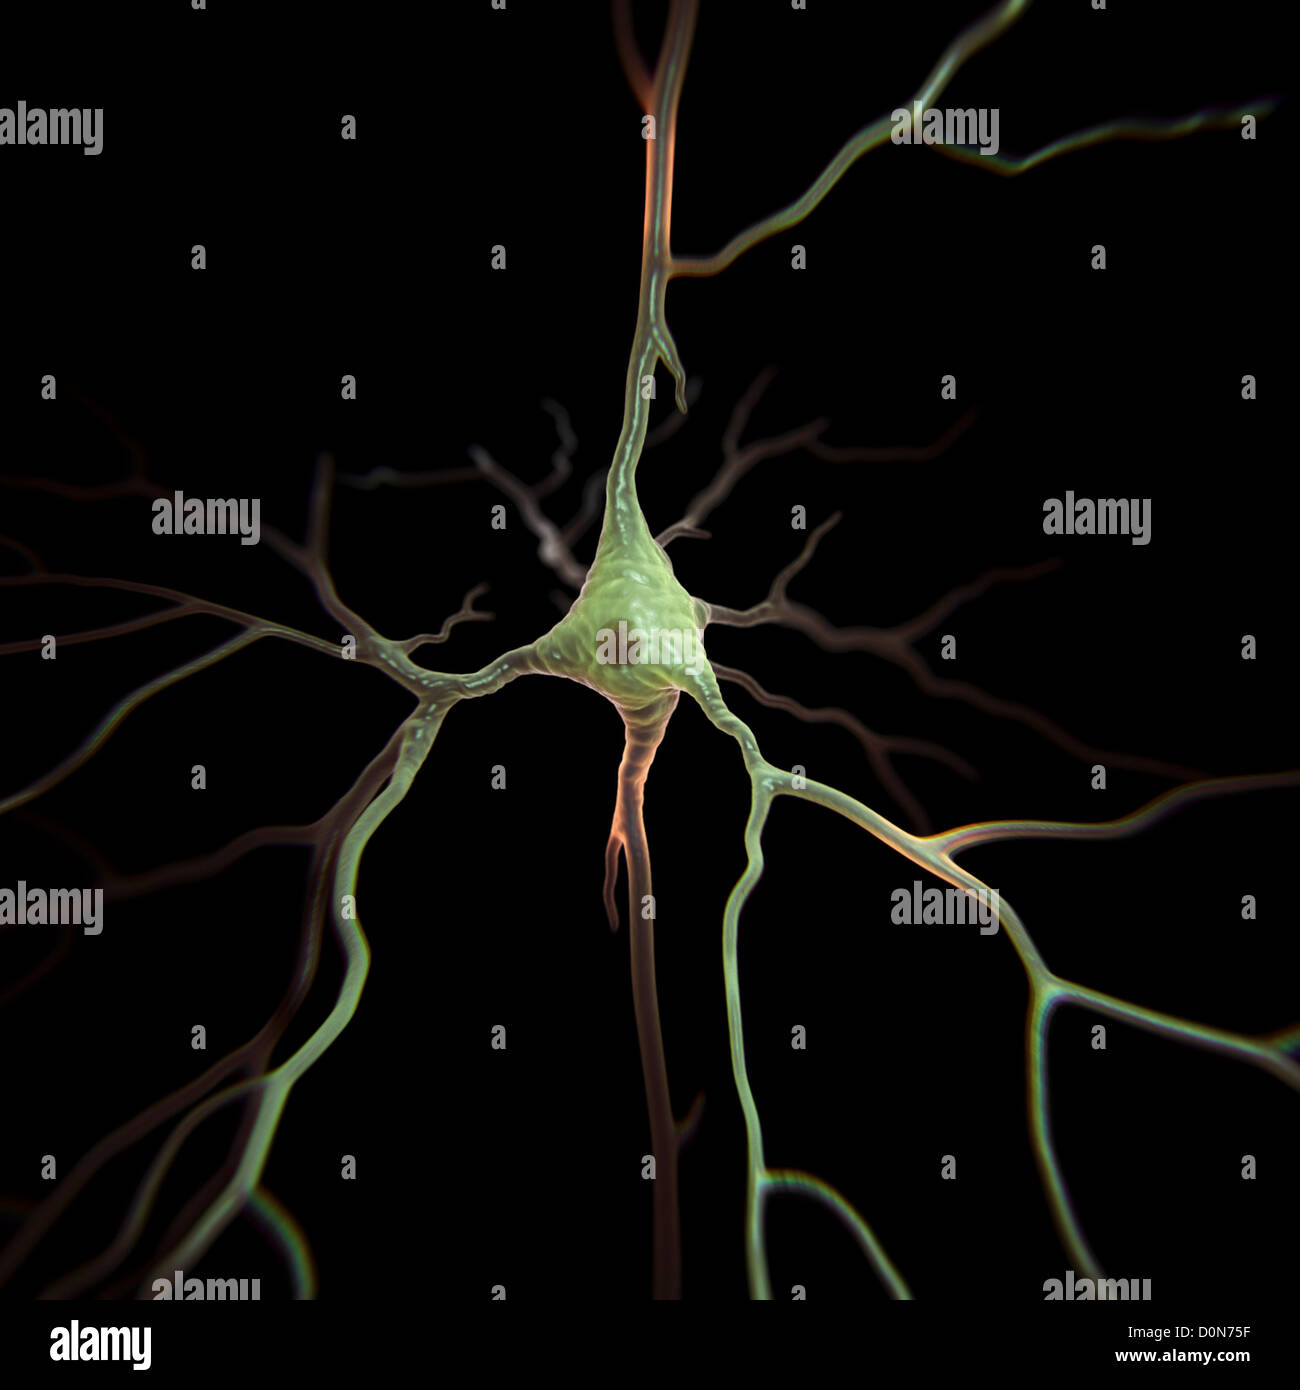 Las neuronas piramidales o las células piramidales son del tipo neurona encontrada en el cerebro, incluyendo regiones como la corteza cerebral, hipocampo Foto de stock